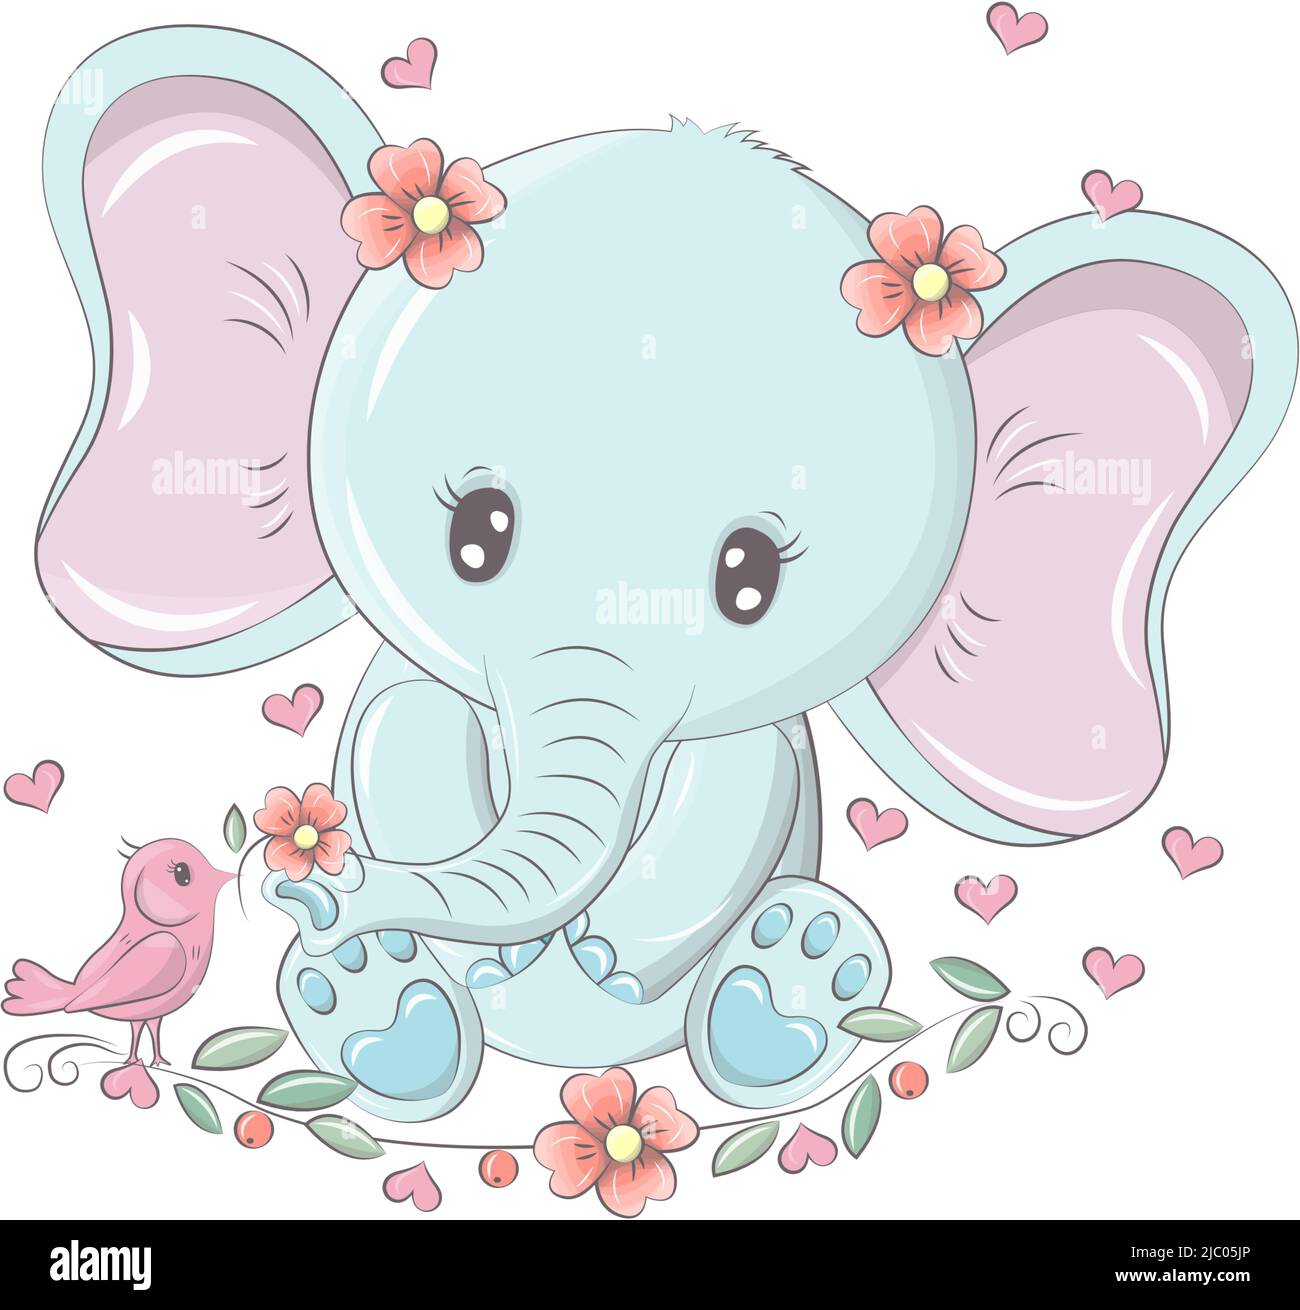 Animal para productos para bebés y vacaciones. Elefante lindo con ojos  divertidos, la ilustración del personaje se hace en estilo de dibujos  animados. Ilustración de animales aislados en la Imagen Vector de